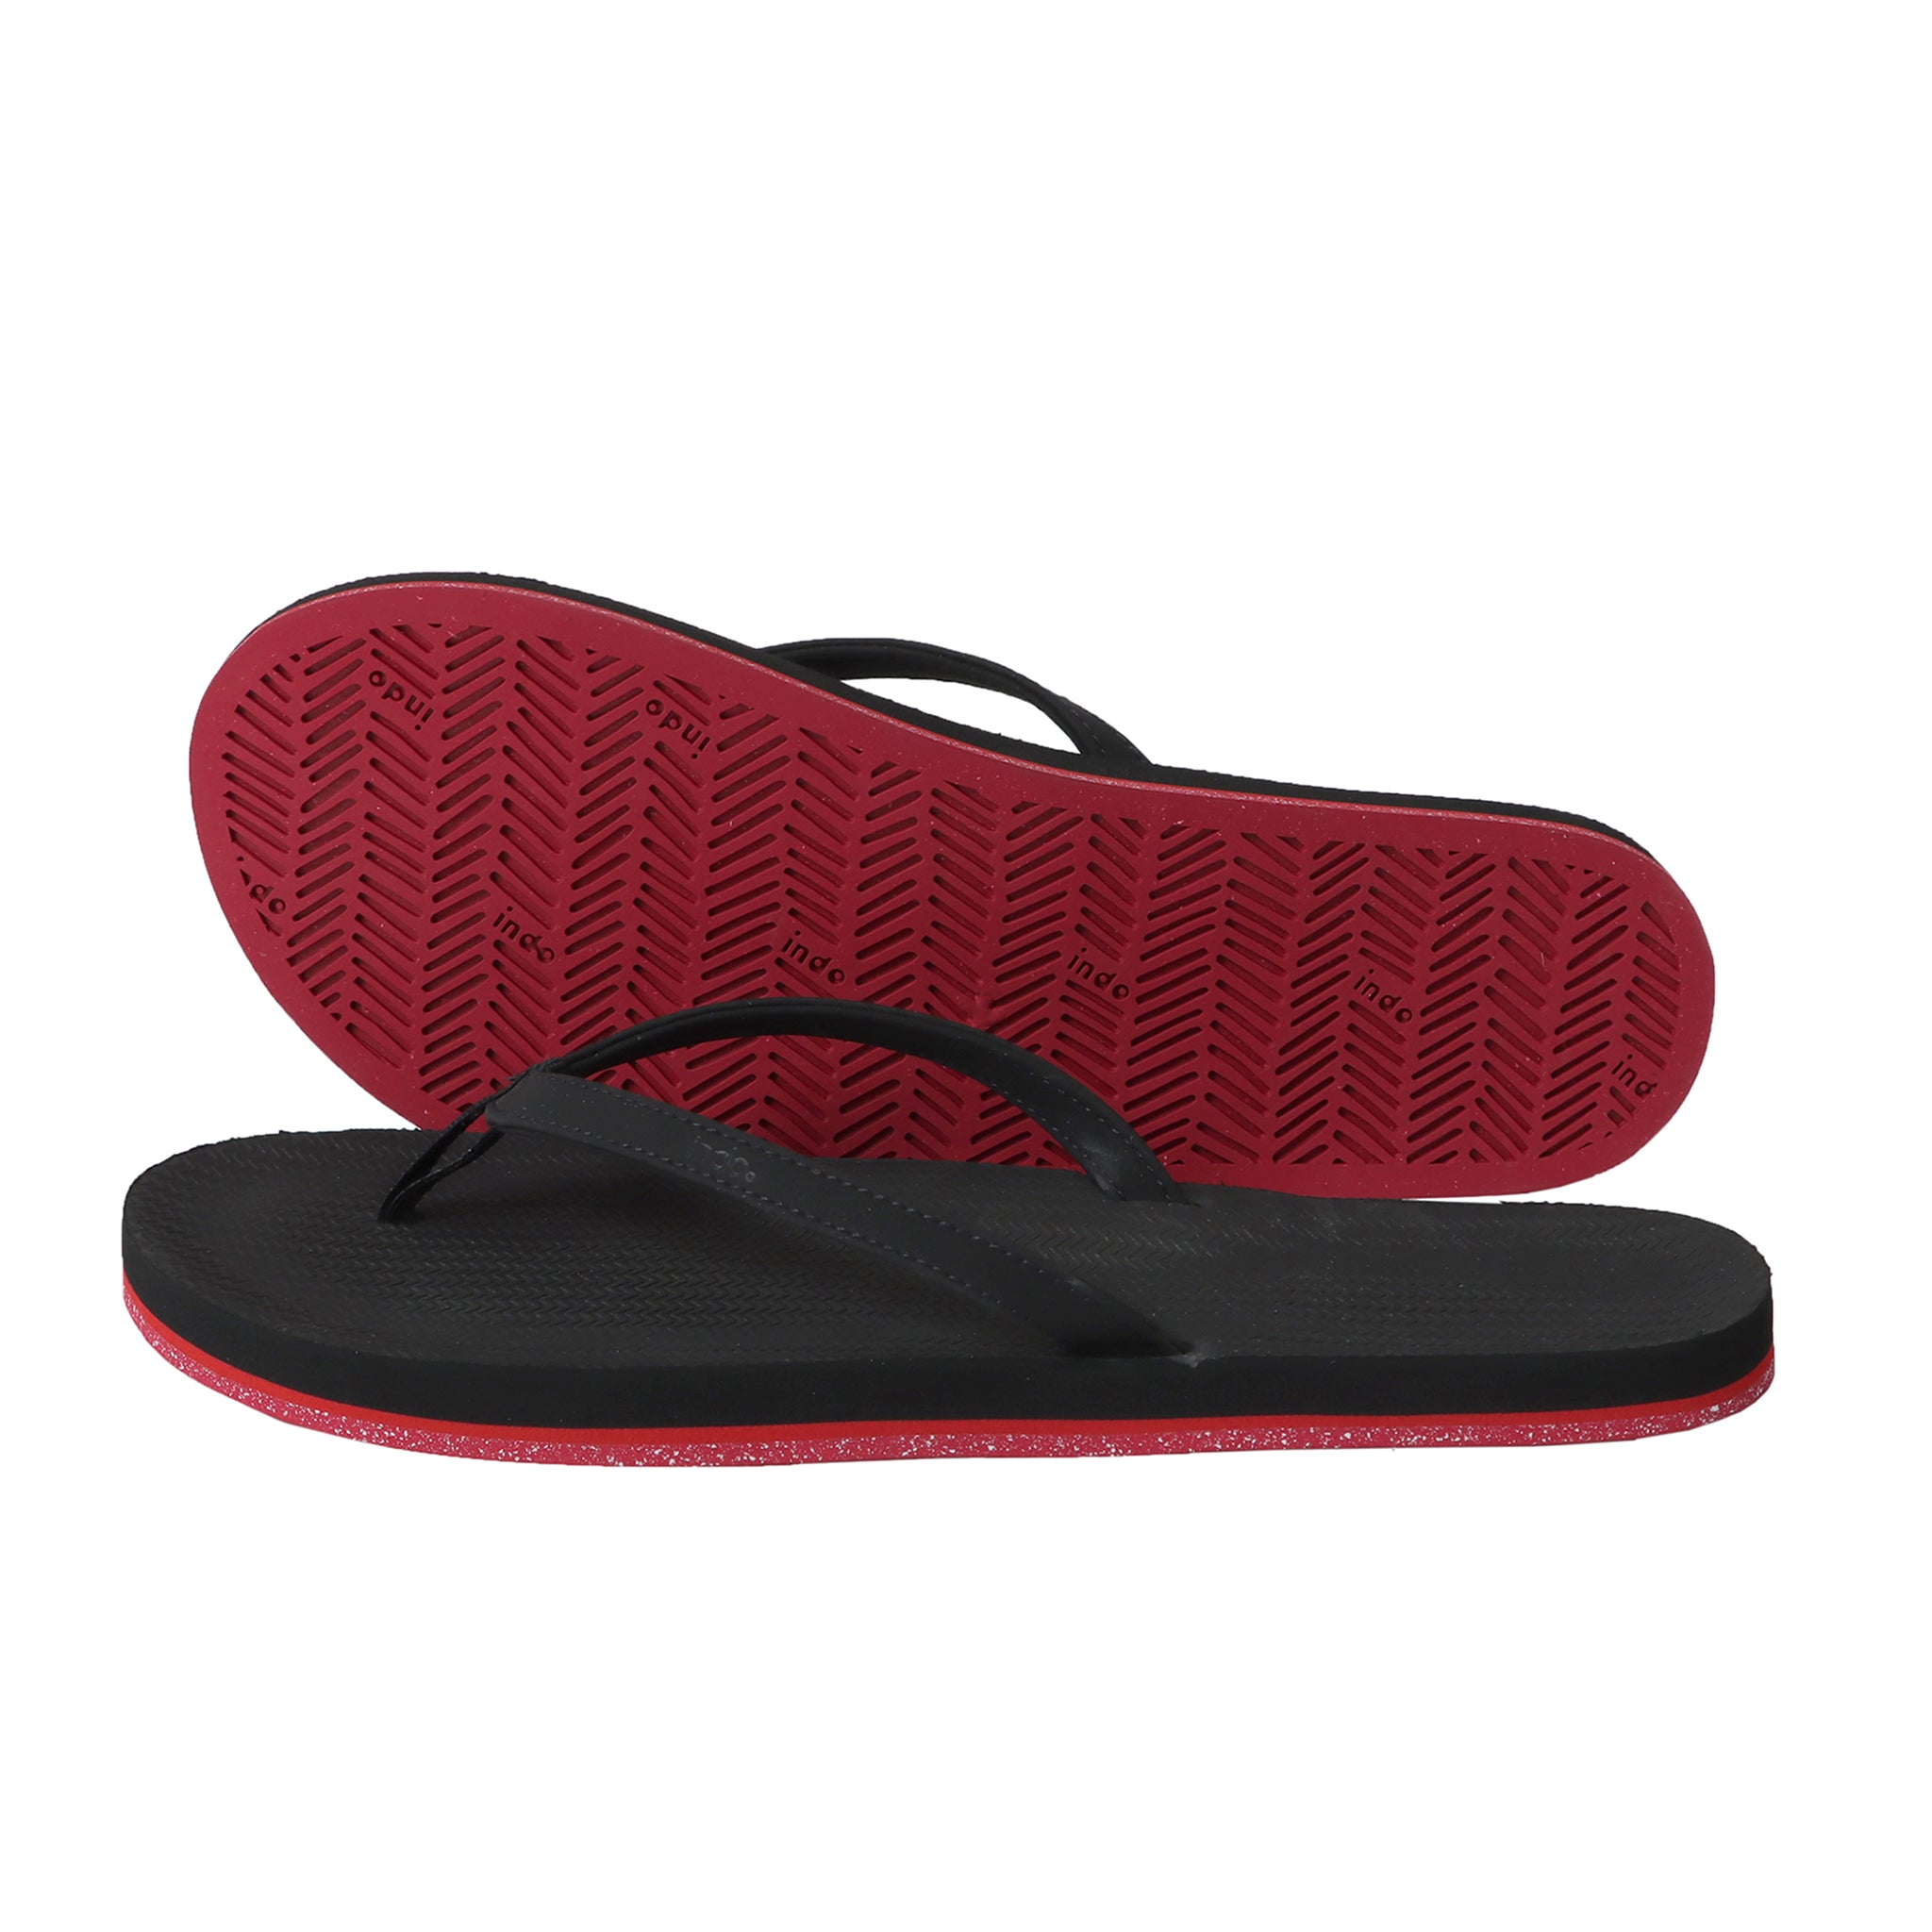 Women’s Flip Flops Sneaker Sole - Black/Red Sole